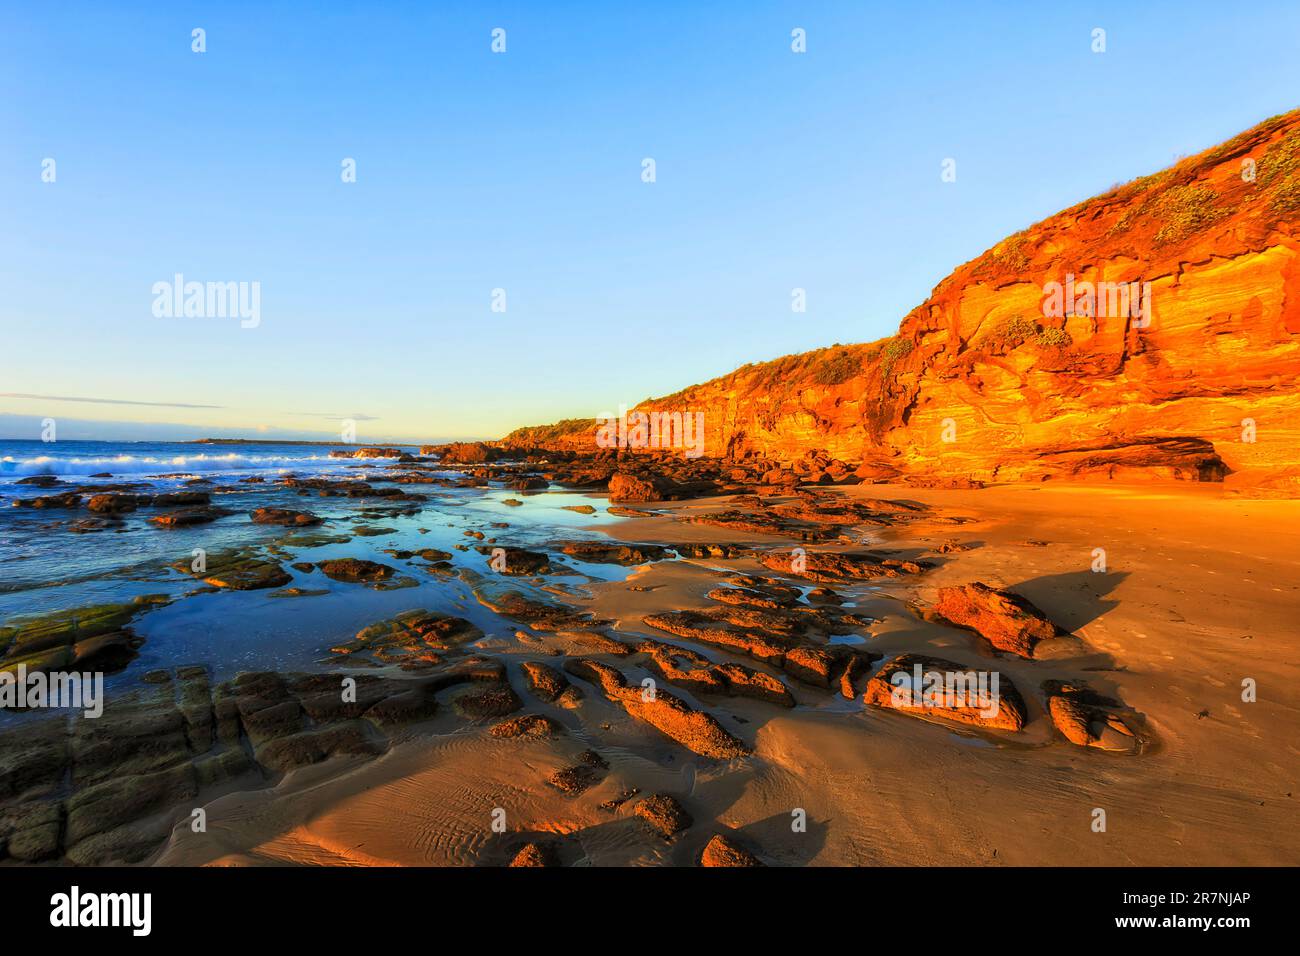 Bassa marea sulla spiaggia di sabbia rocciosa nella spiaggia di Caves sulla costa del Pacifico dell'australia - sunrise Seascape. Foto Stock